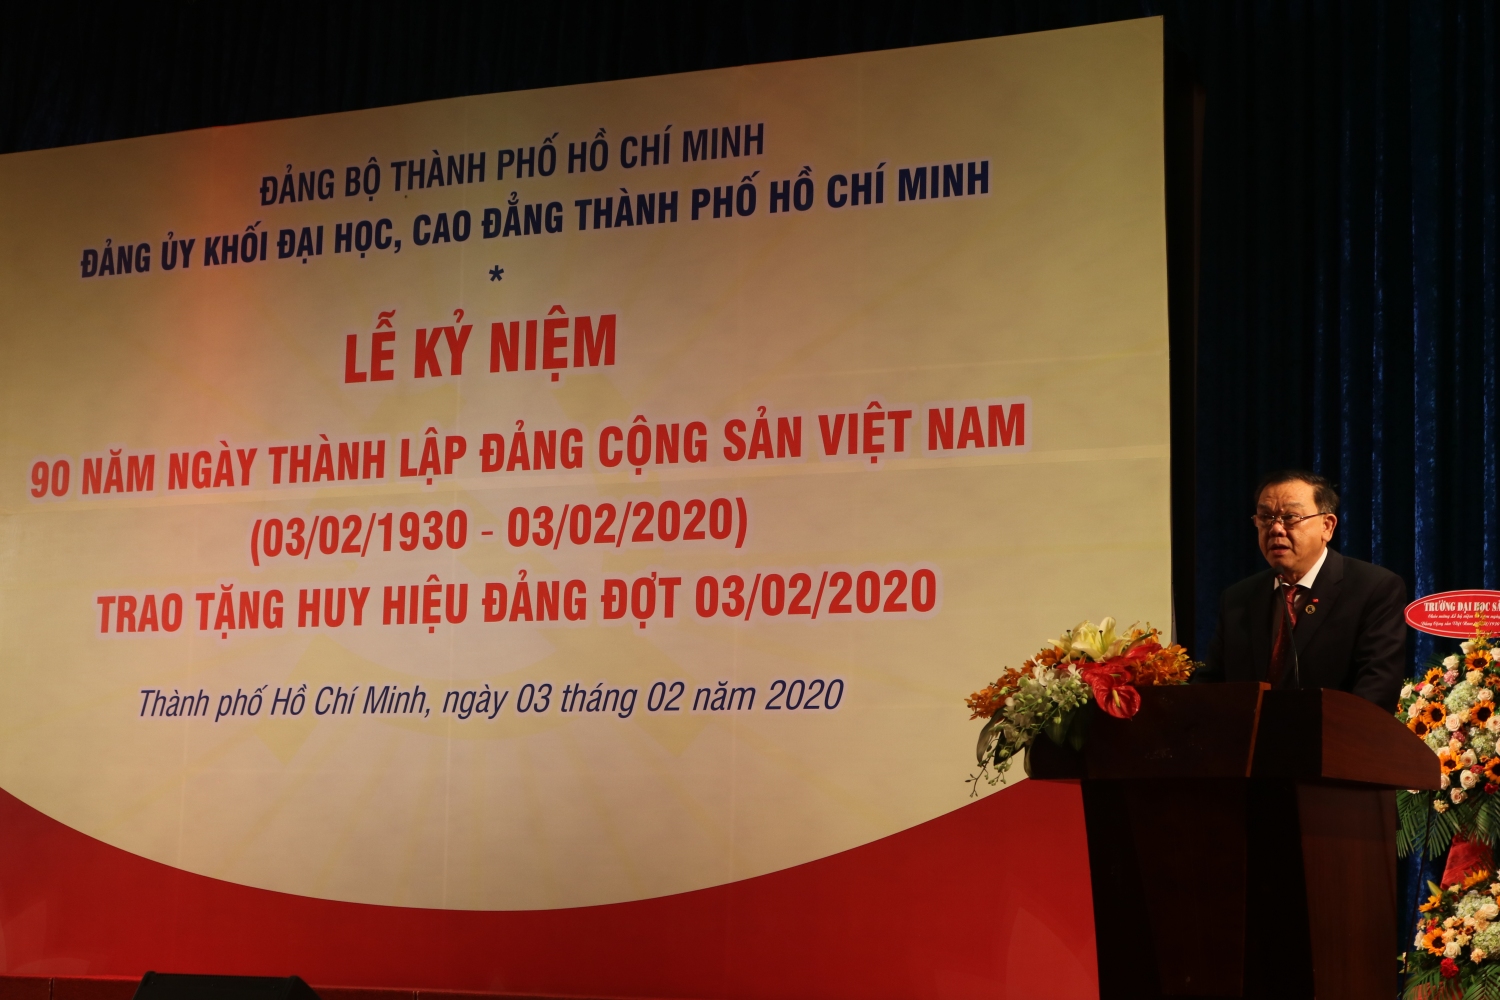 3.	Đồng chí Nguyễn Đông Phong – Bí thư Đảng ủy Khối phát biển ôn lại truyền thống